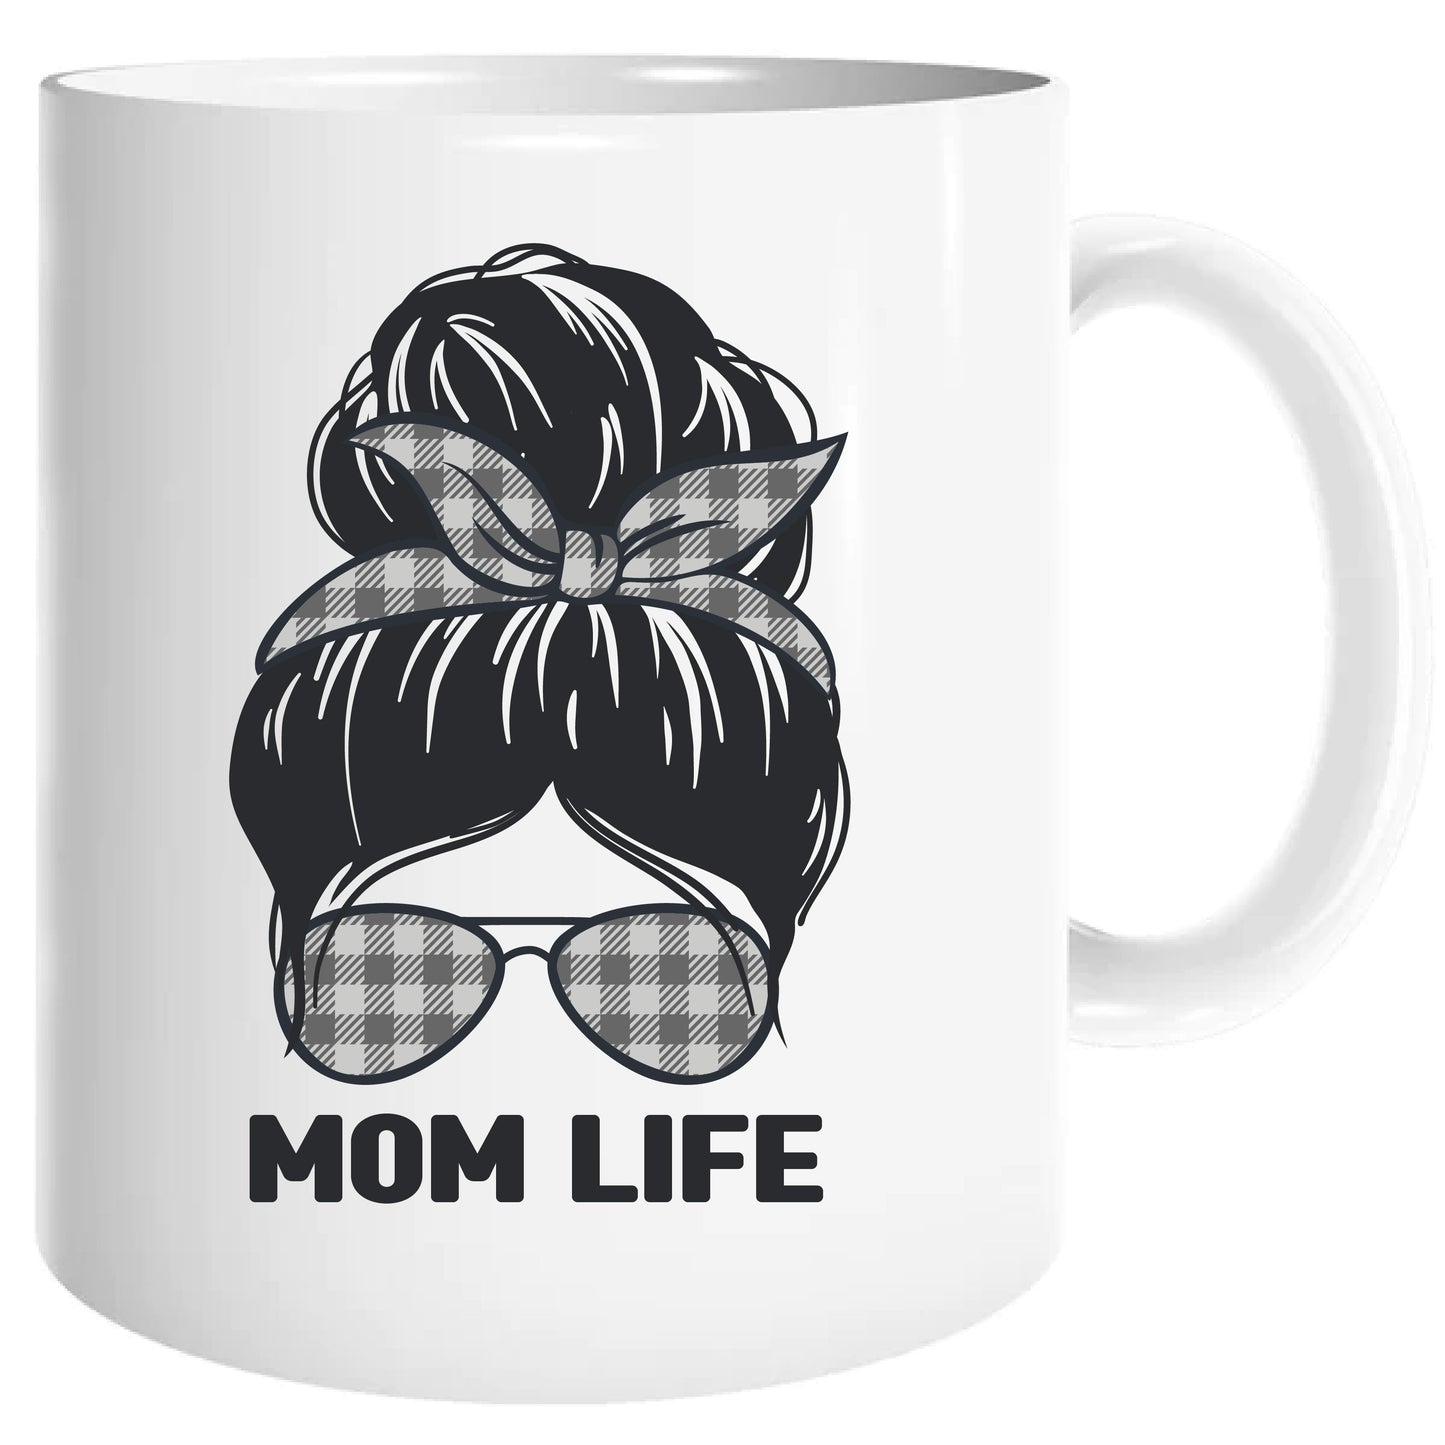 Mom life mug